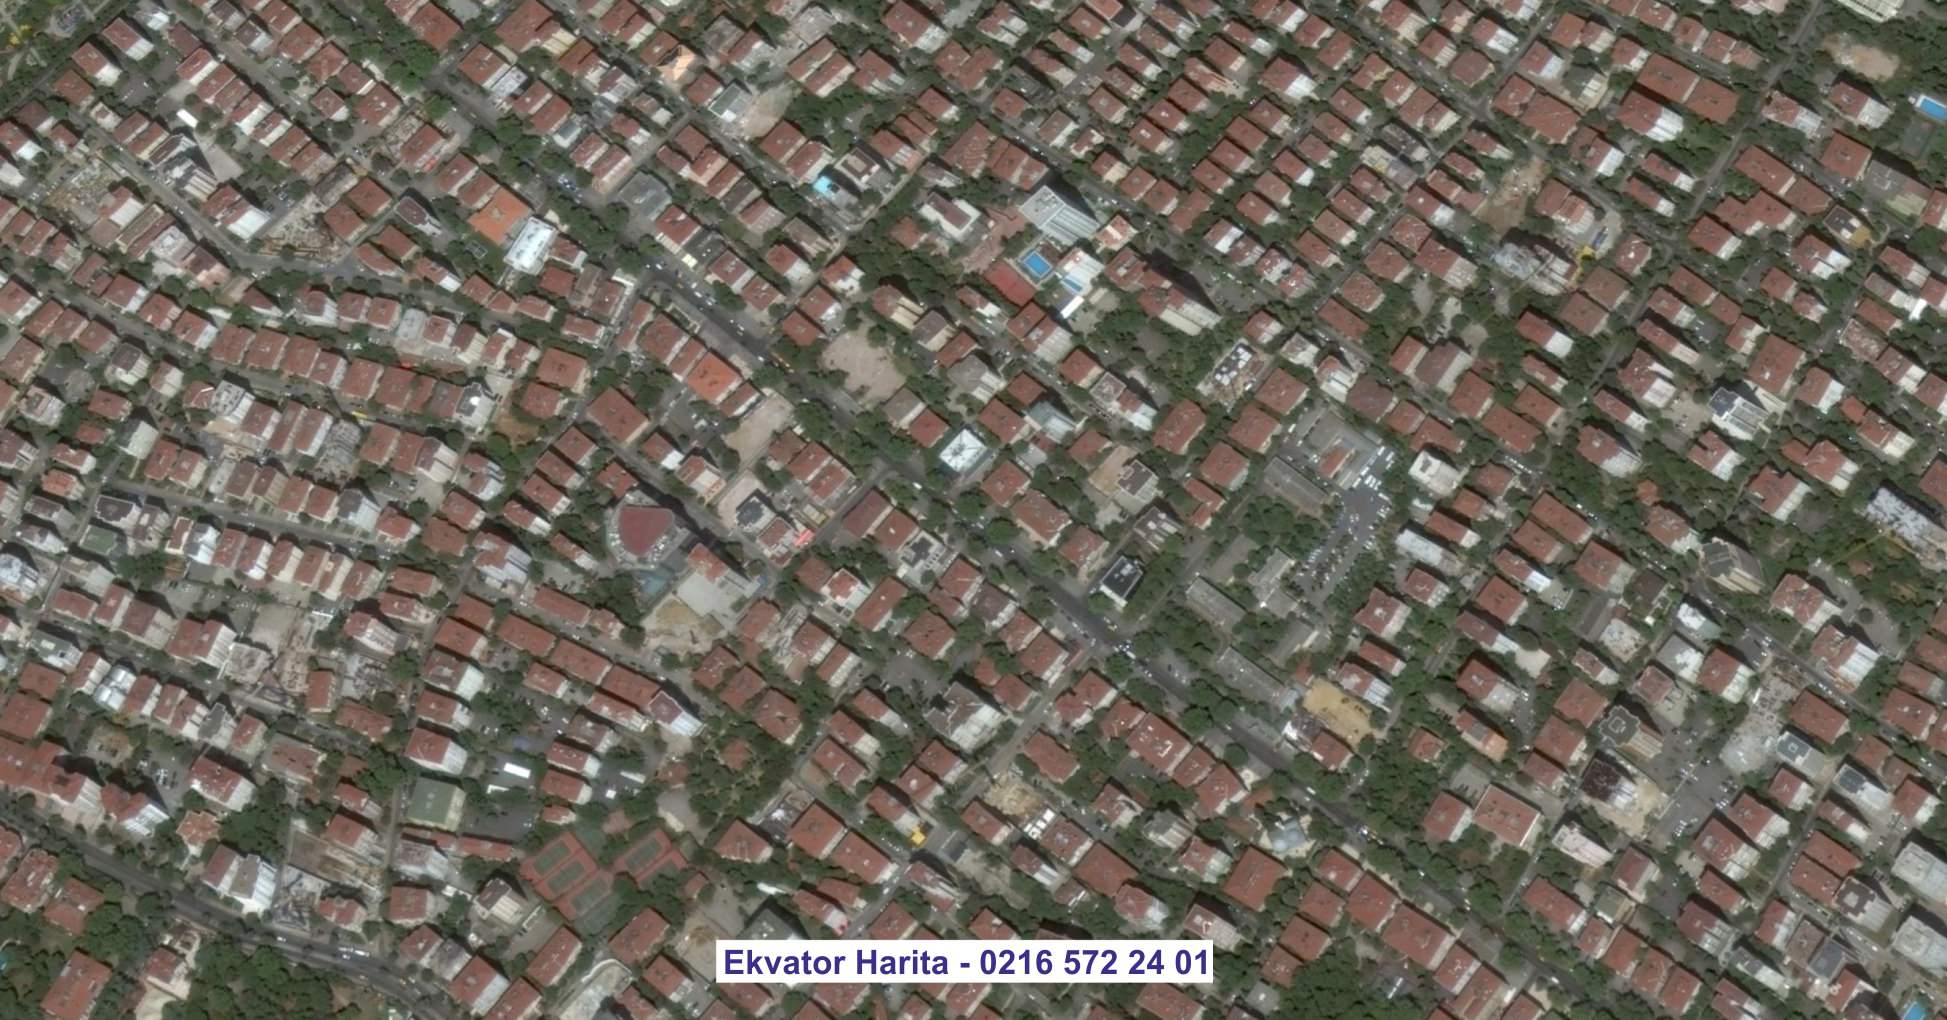 Antakya Uydu Görüntüsü Örnek Fotoğrafı